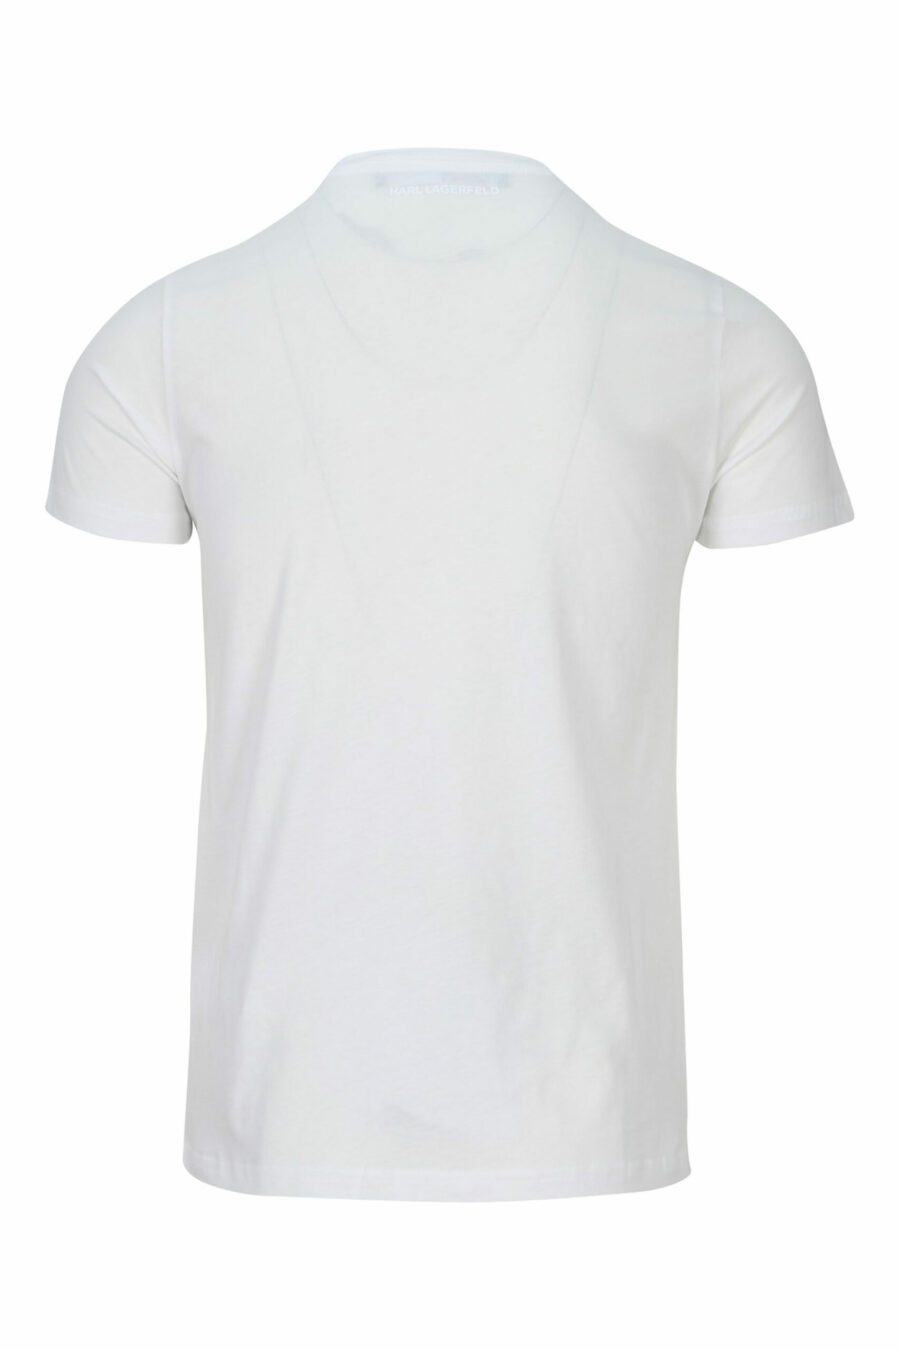 T-shirt blanc à col rond avec maxilogo "karl" - 4062225535237 1 scaled